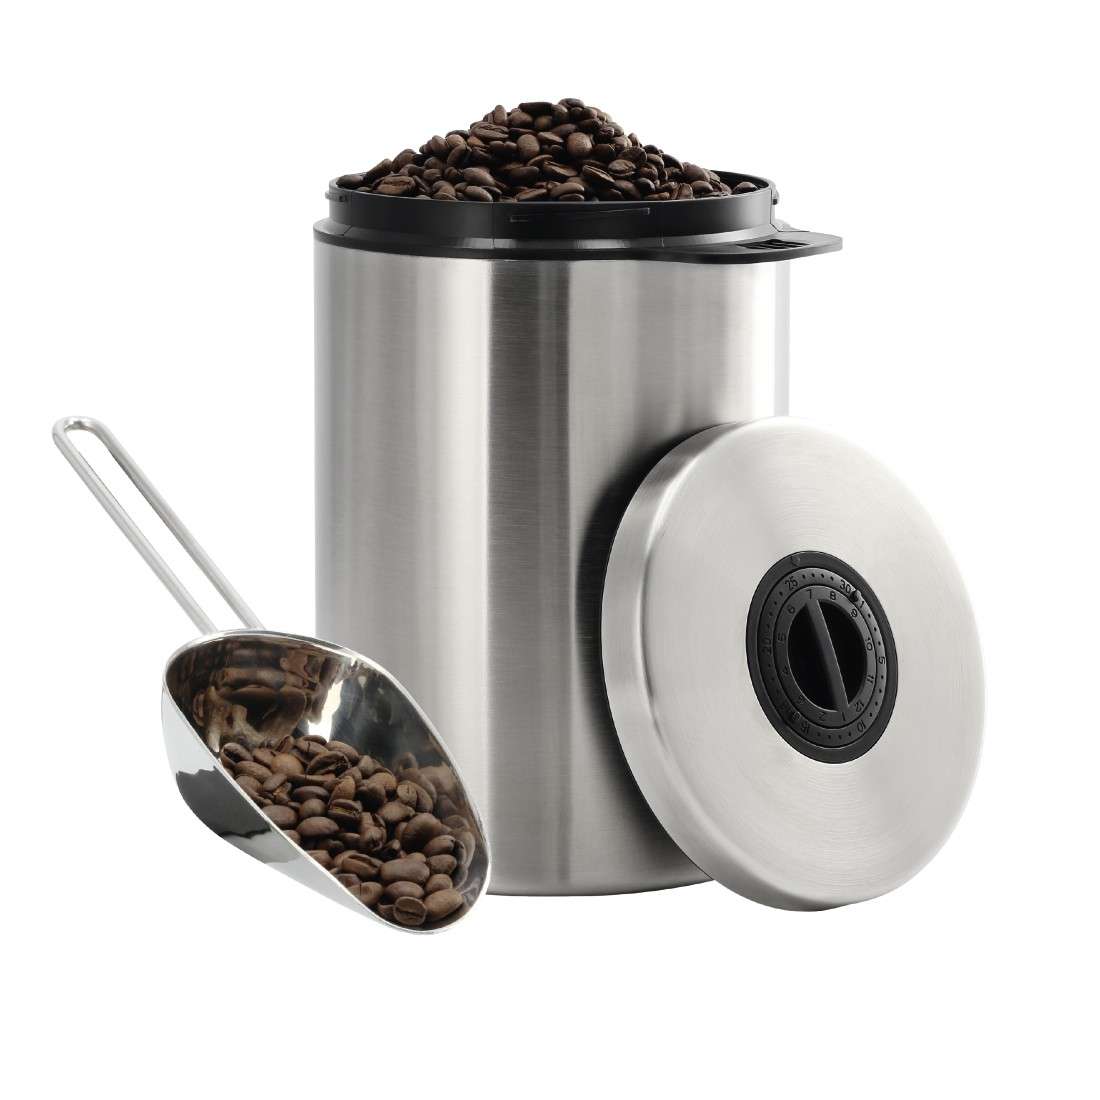 XAVAX Edelstahldose für 1 kg Kaffeebohnen, mit Schaufel